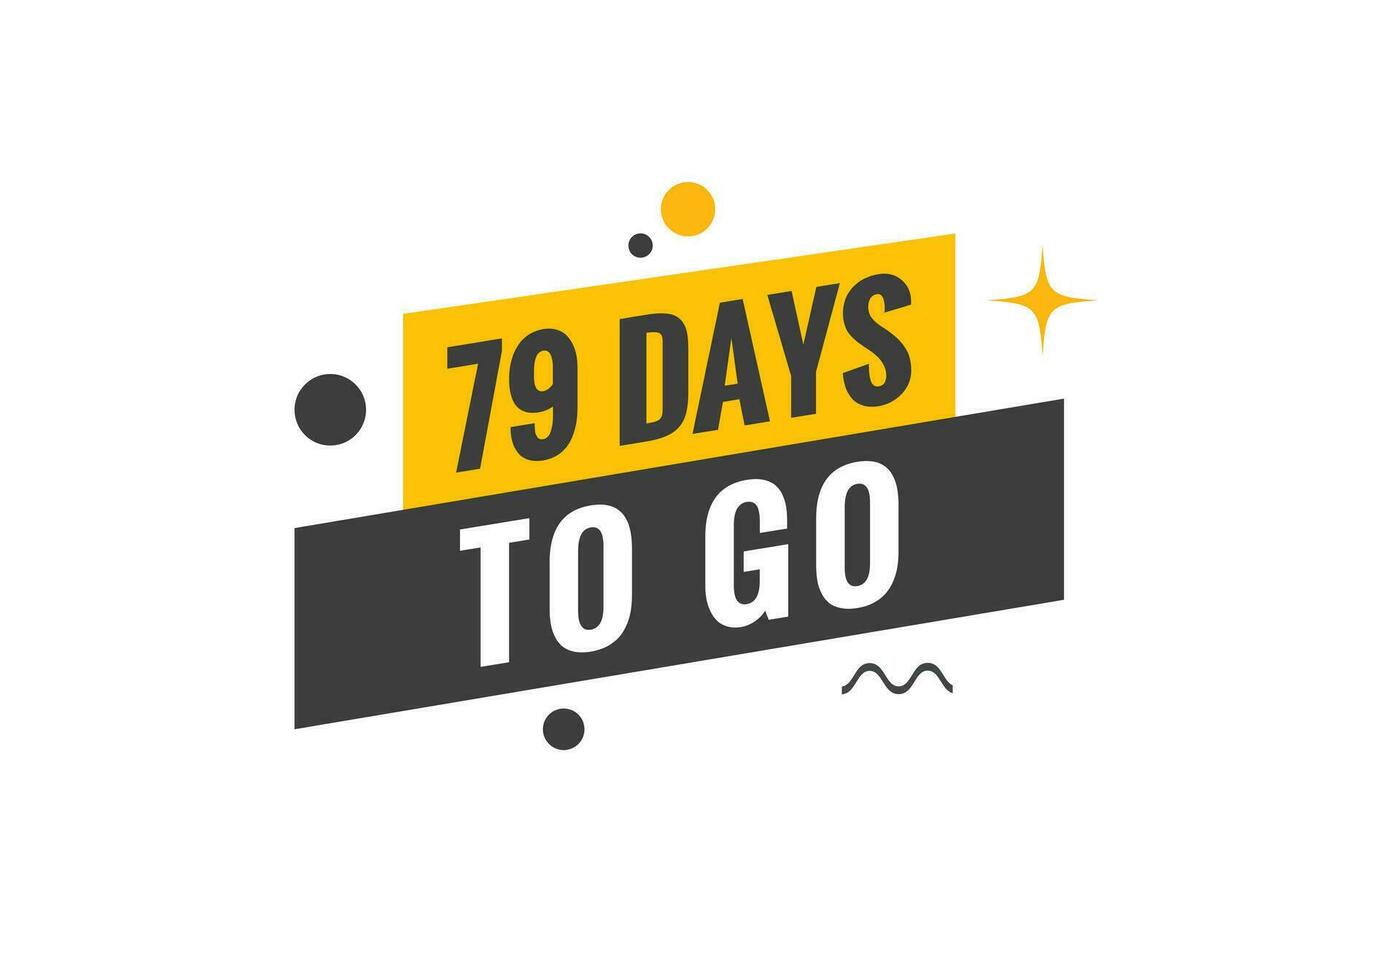 79 dagen naar Gaan countdown sjabloon. 79 dag countdown links dagen banier ontwerp vector